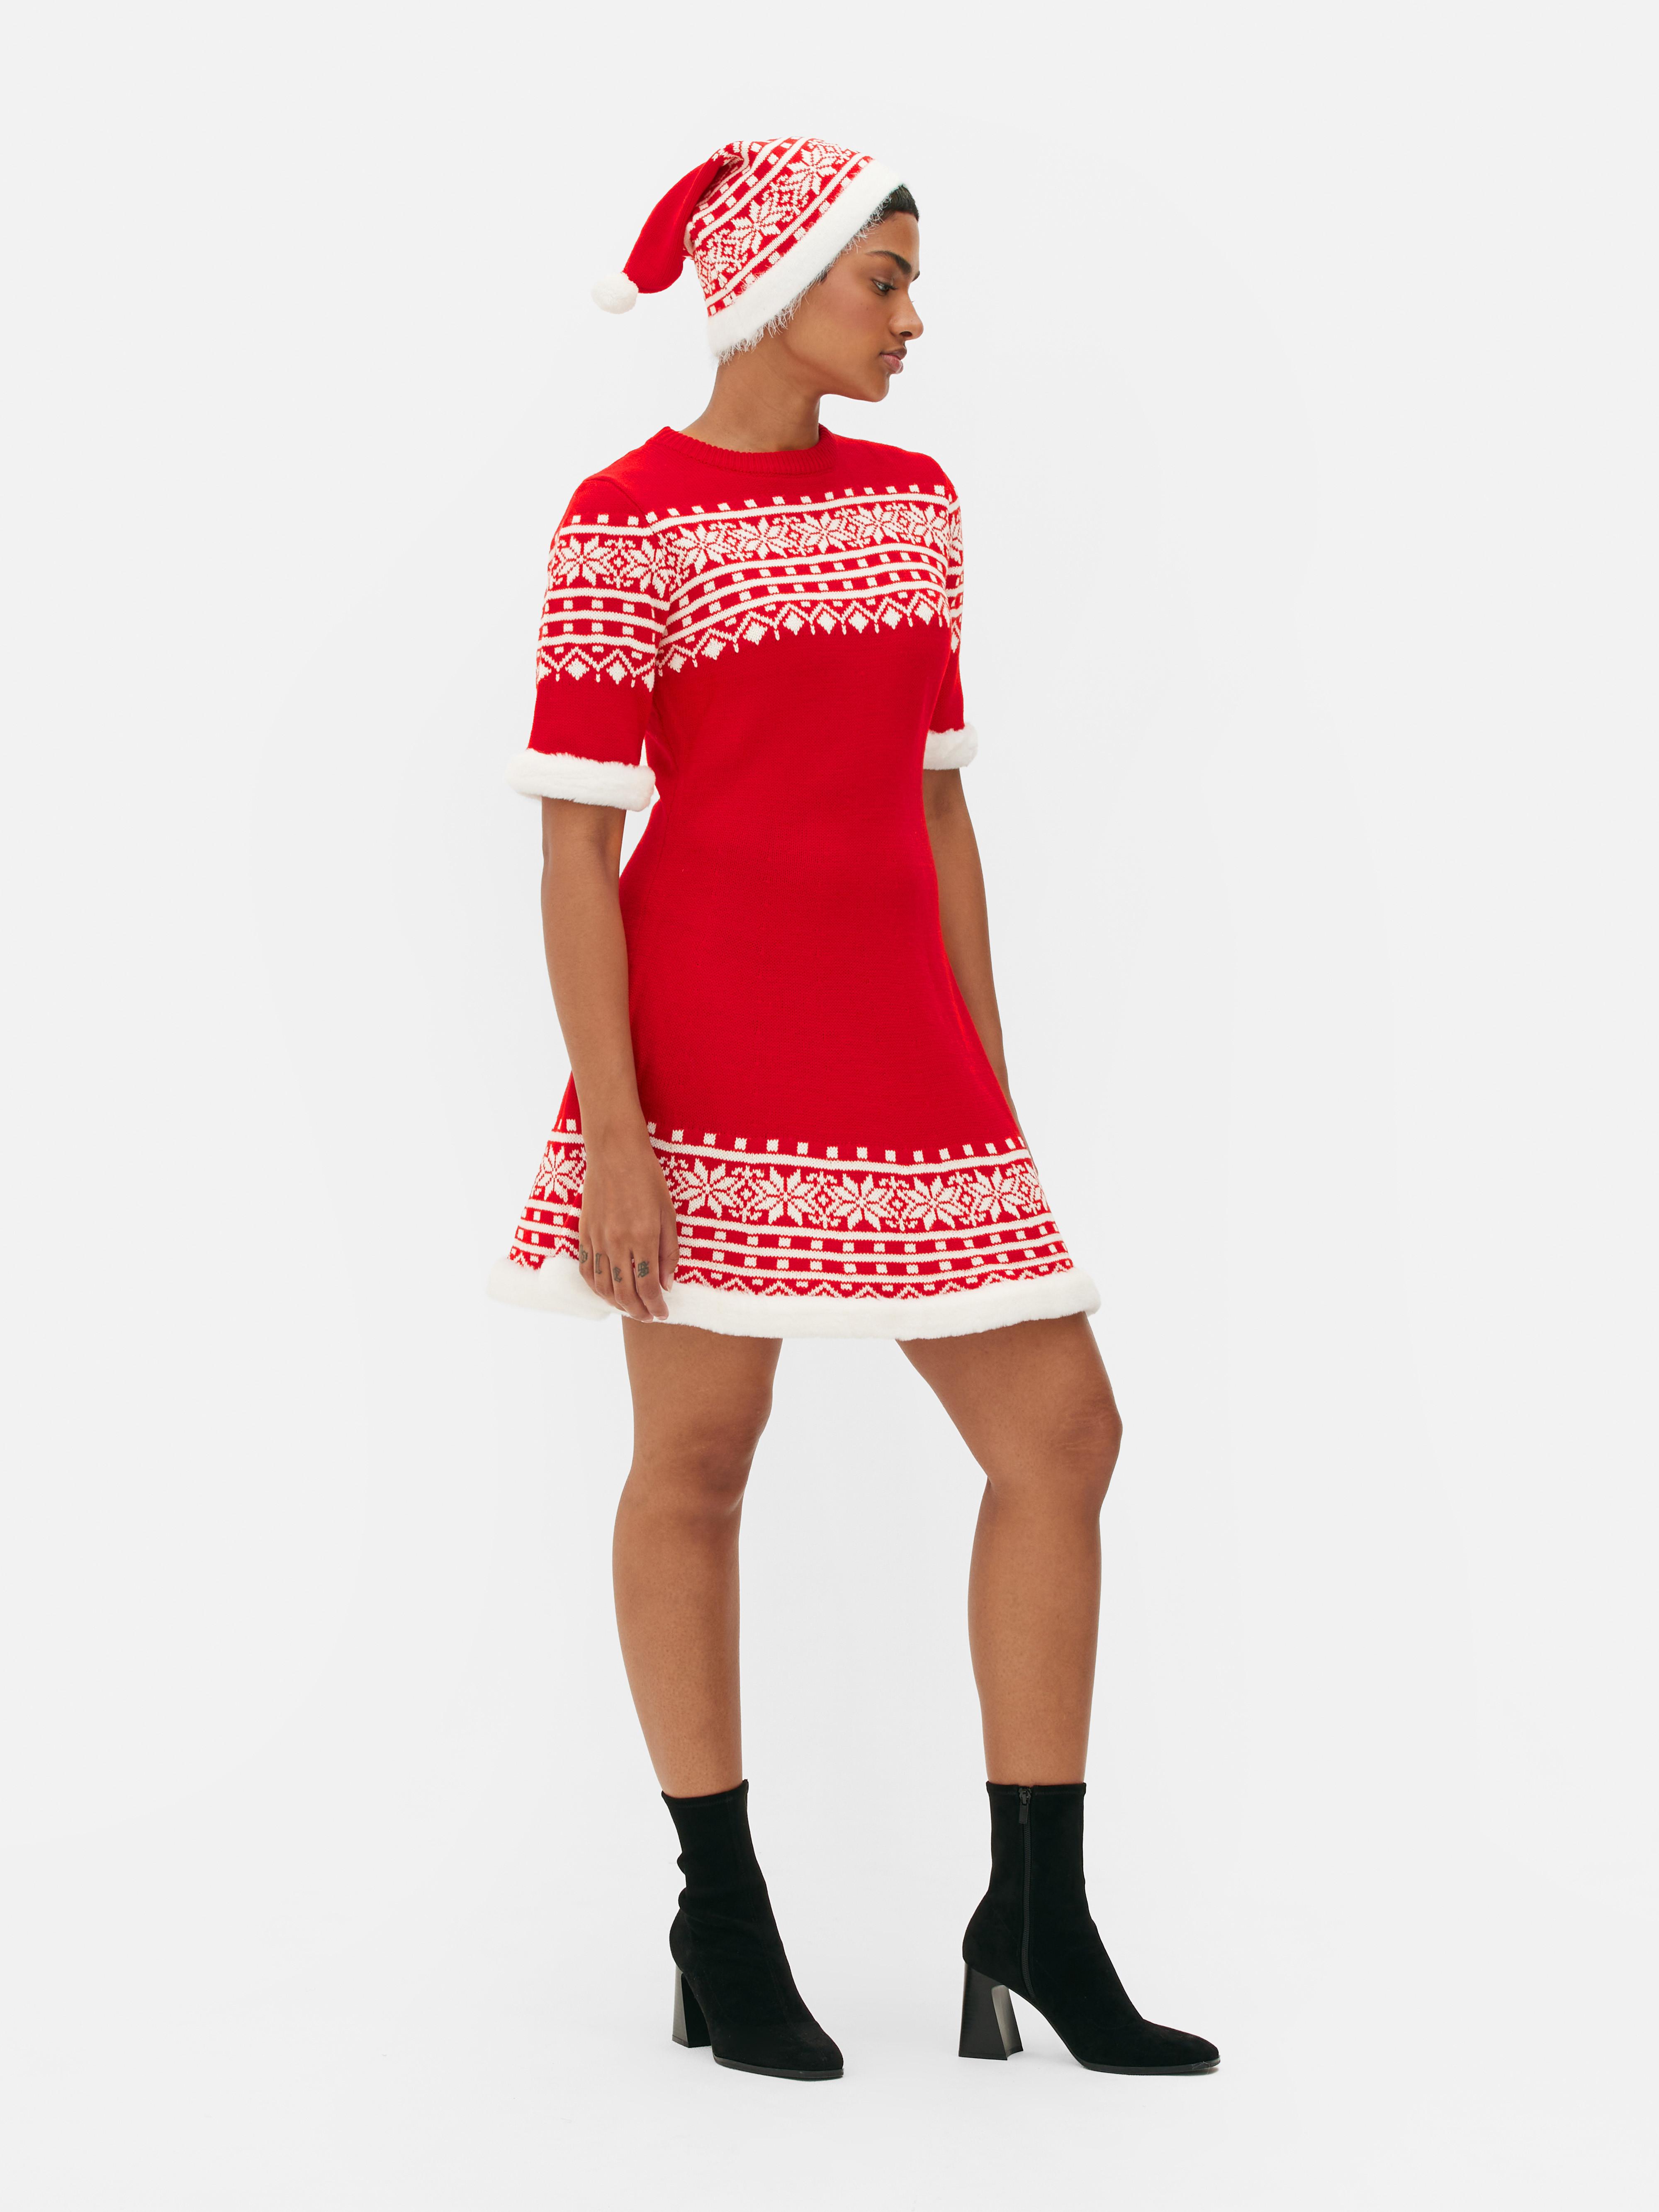 Vestito e cappello di Babbo Natale da donna